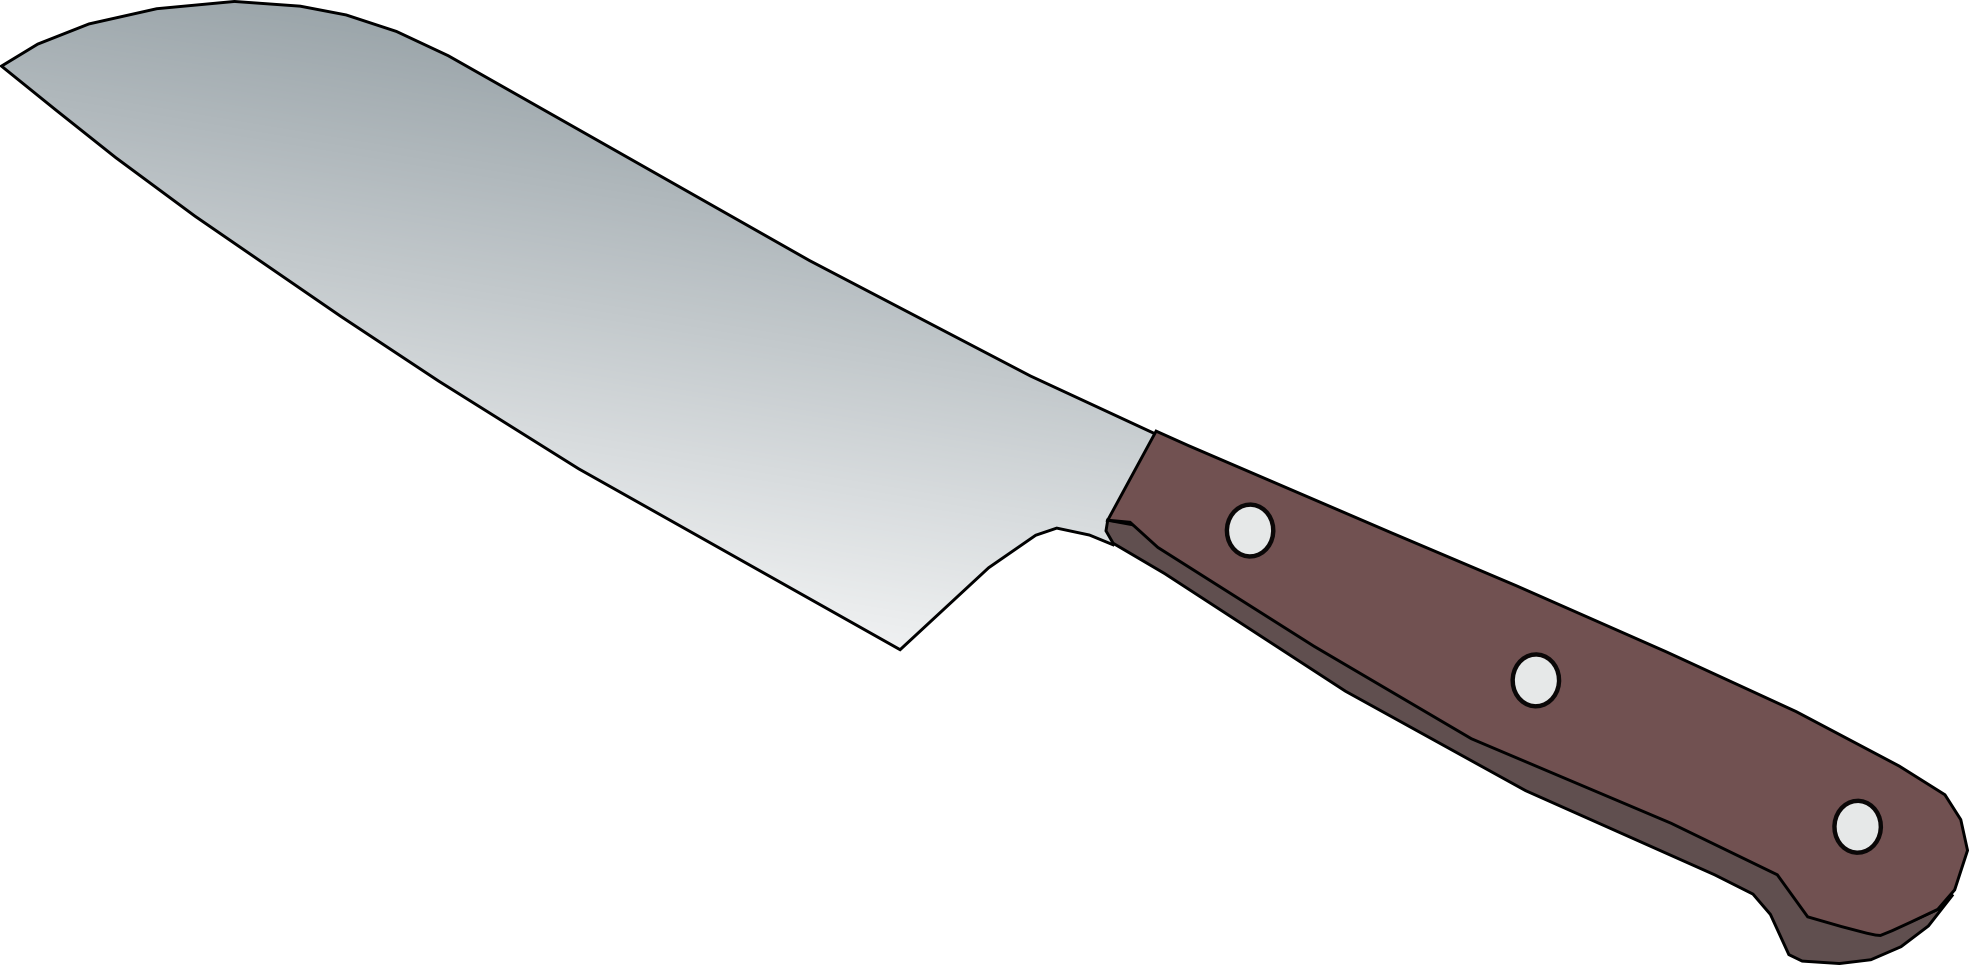 Knife Cartoon Clipart - ClipArt Best